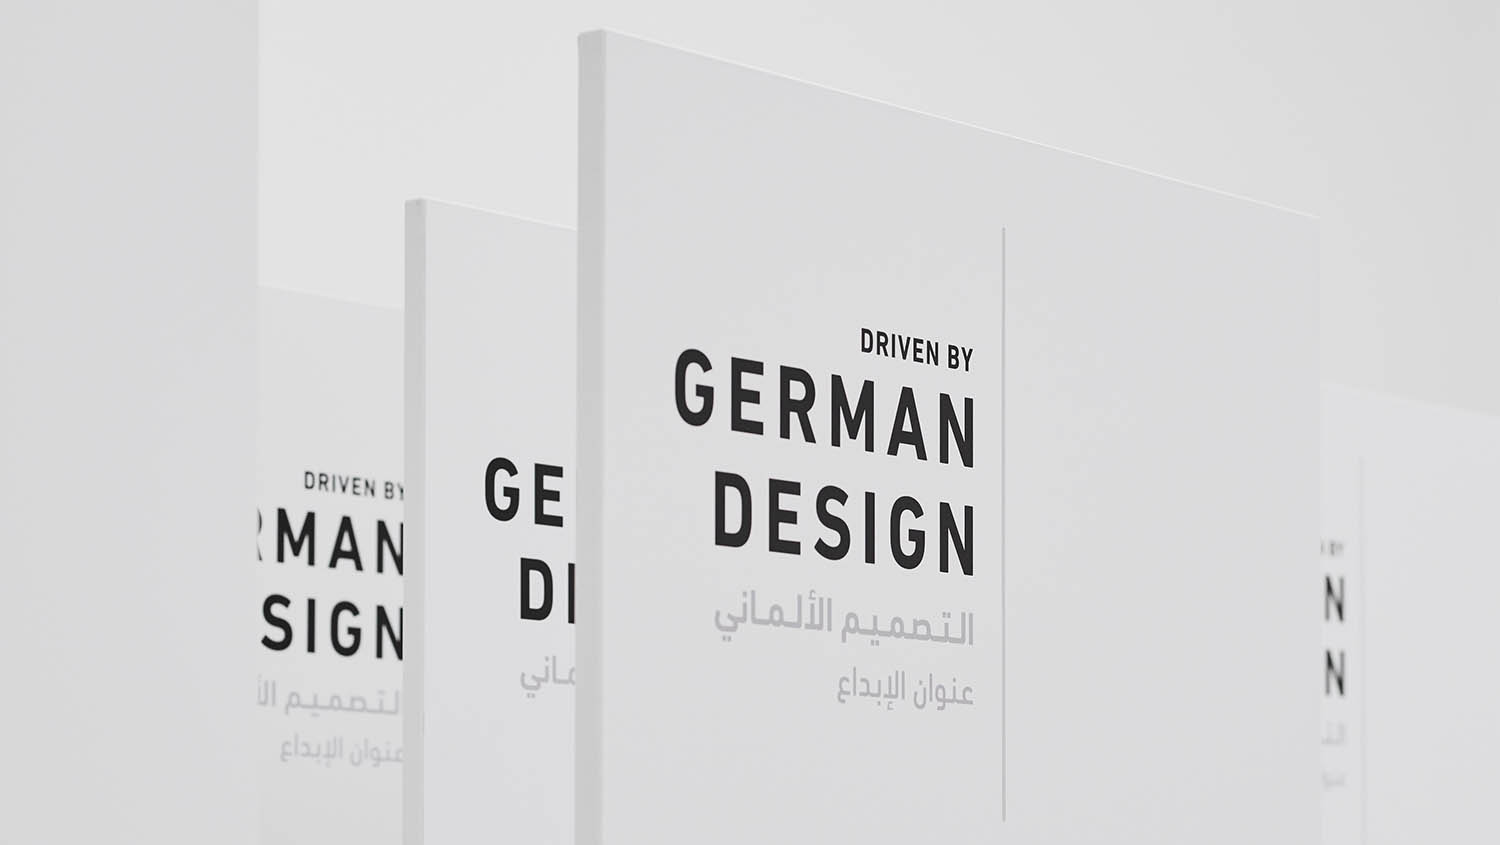 392207_exhibition_driven_by_german_design_qatar_museum_2017_porsche_ag.jpg